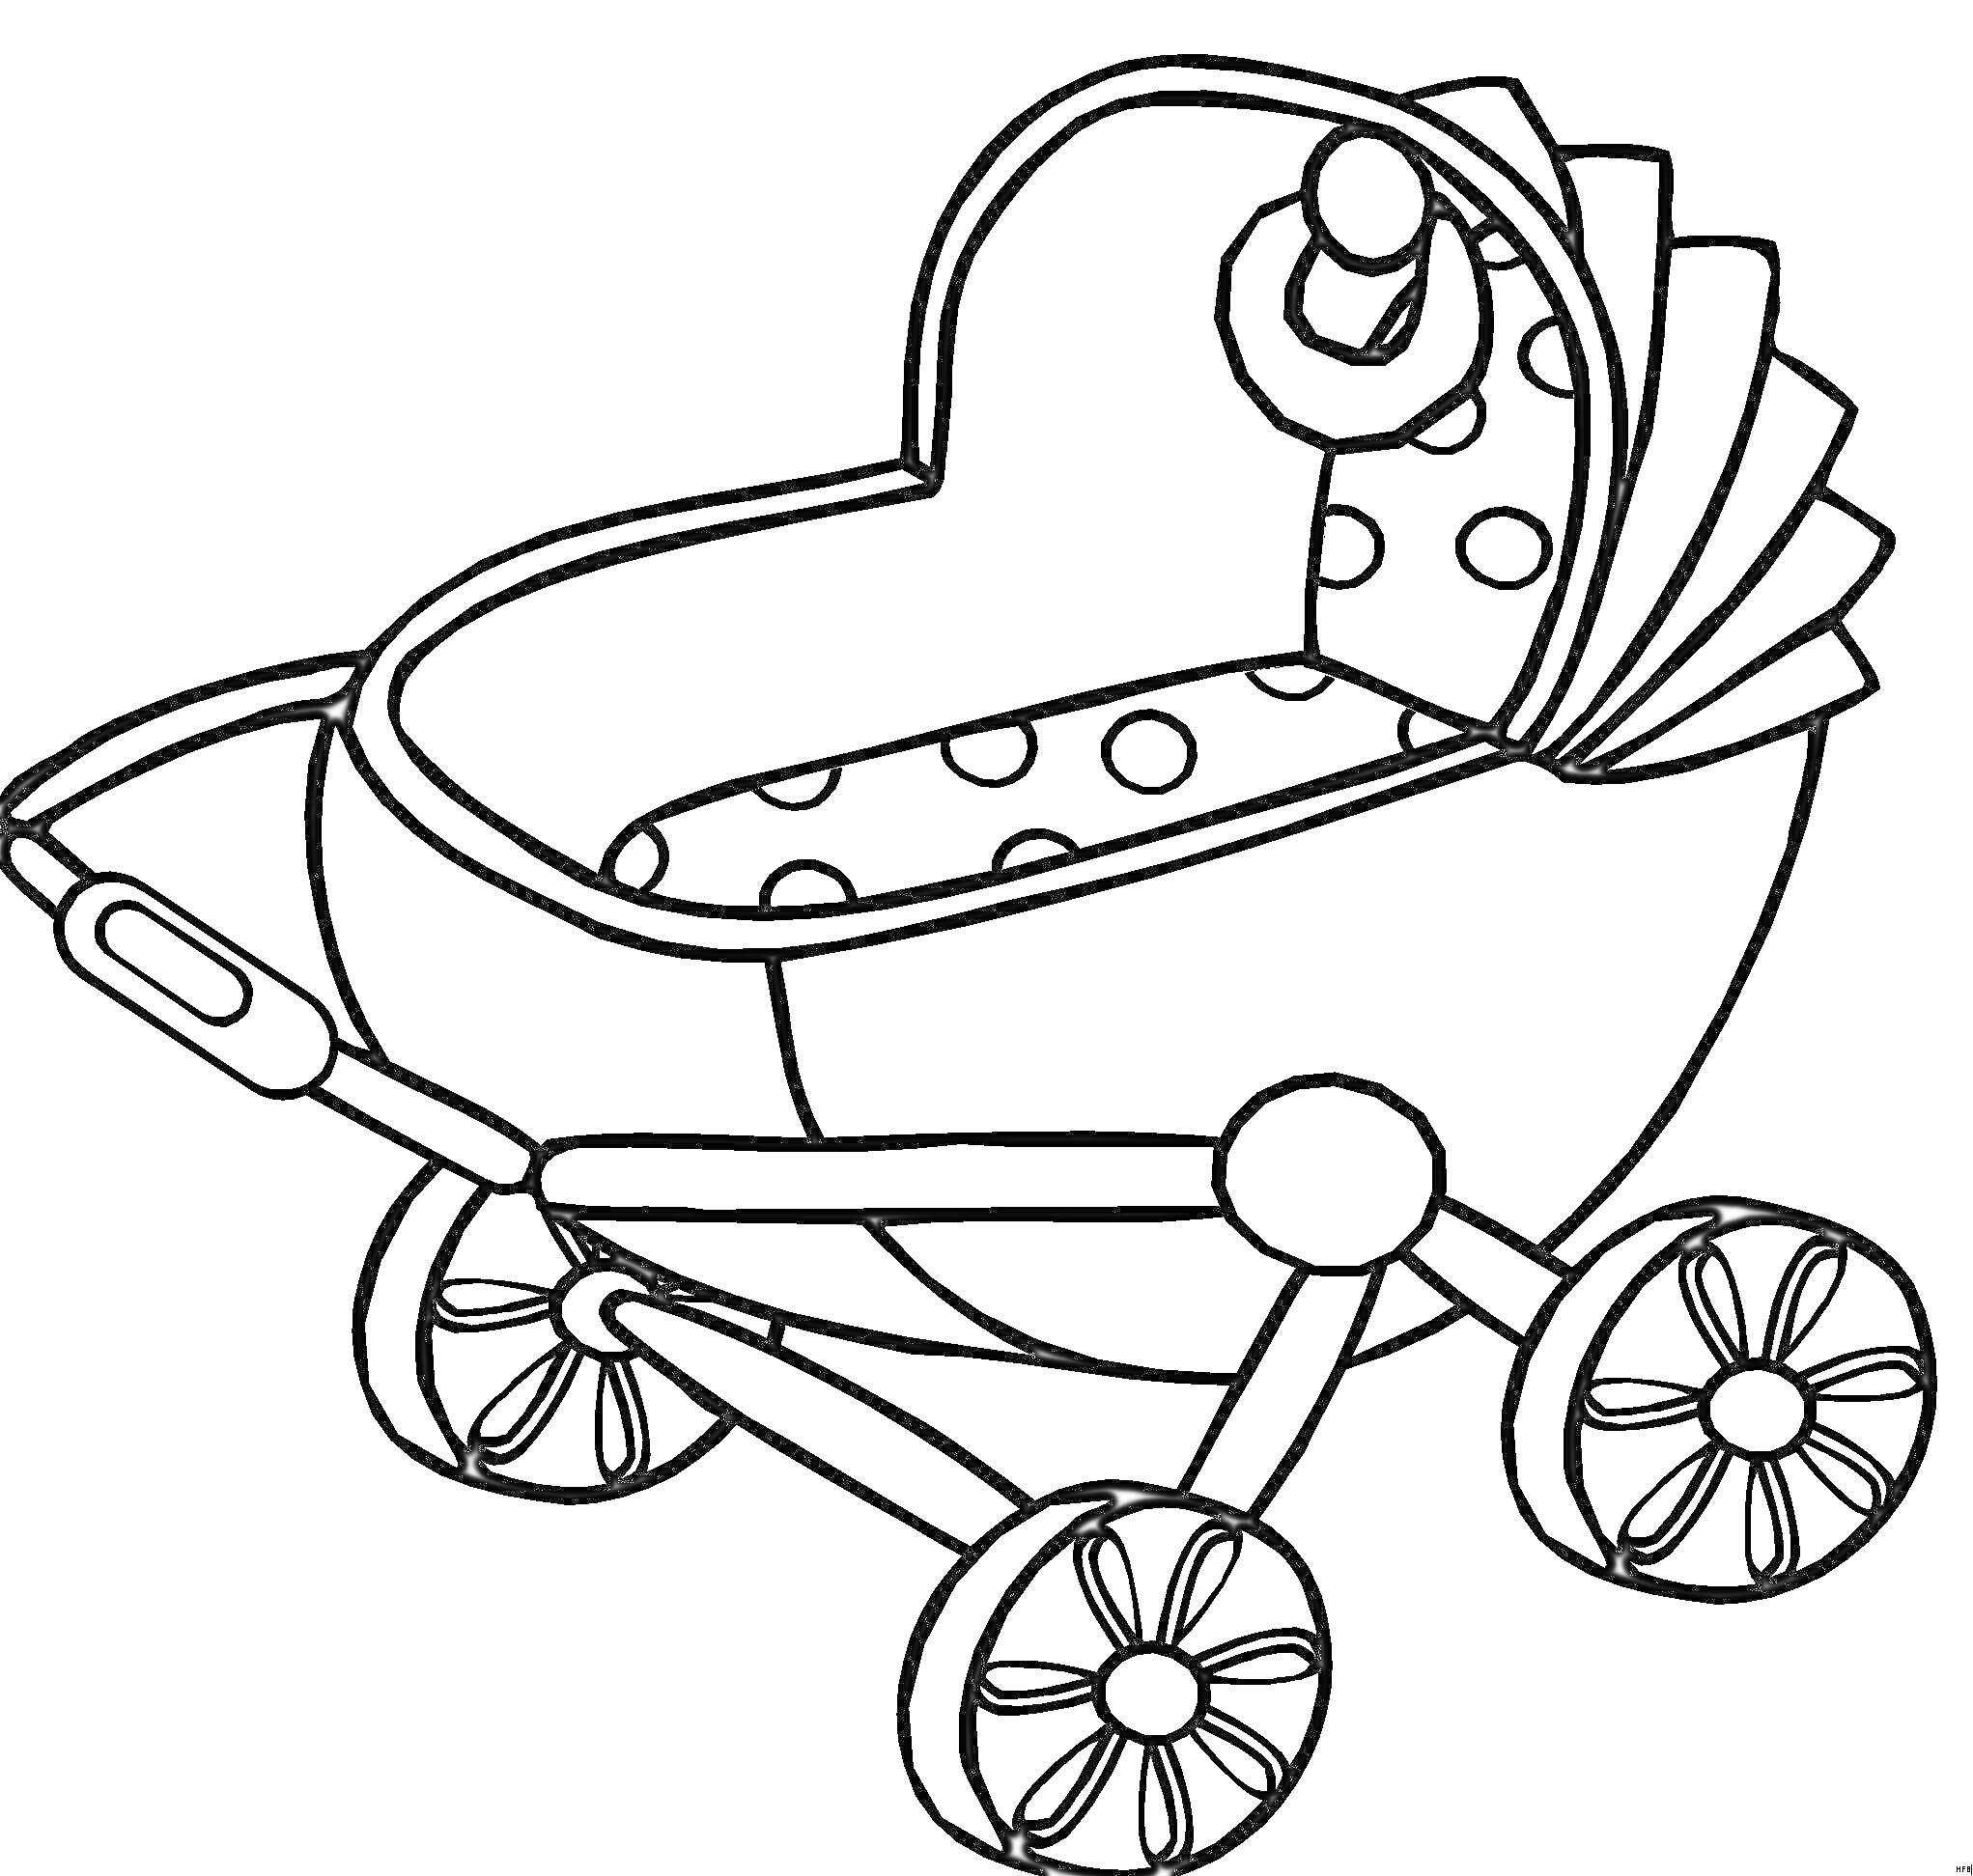 Раскраска Детская коляска с полусферическим верхом, ручкой, четырьмя колёсами и игрушкой внутри